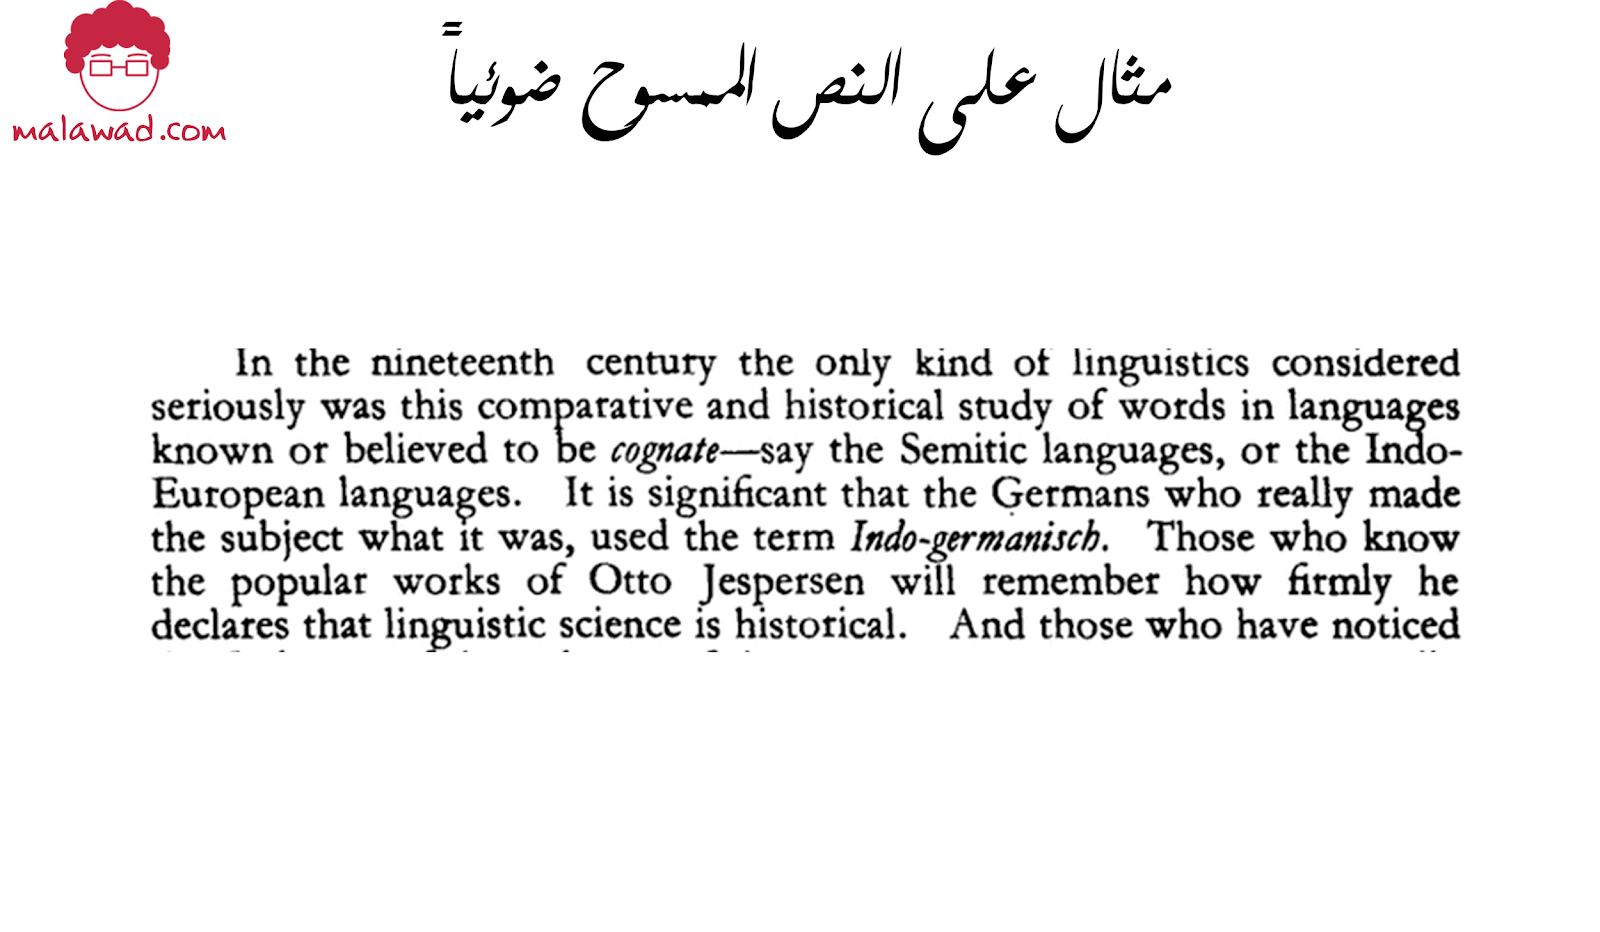 مثال على النص الممسوح ضوئيا (malawad)(mohammed alawad)(معالجة اللغة الطبيعية)